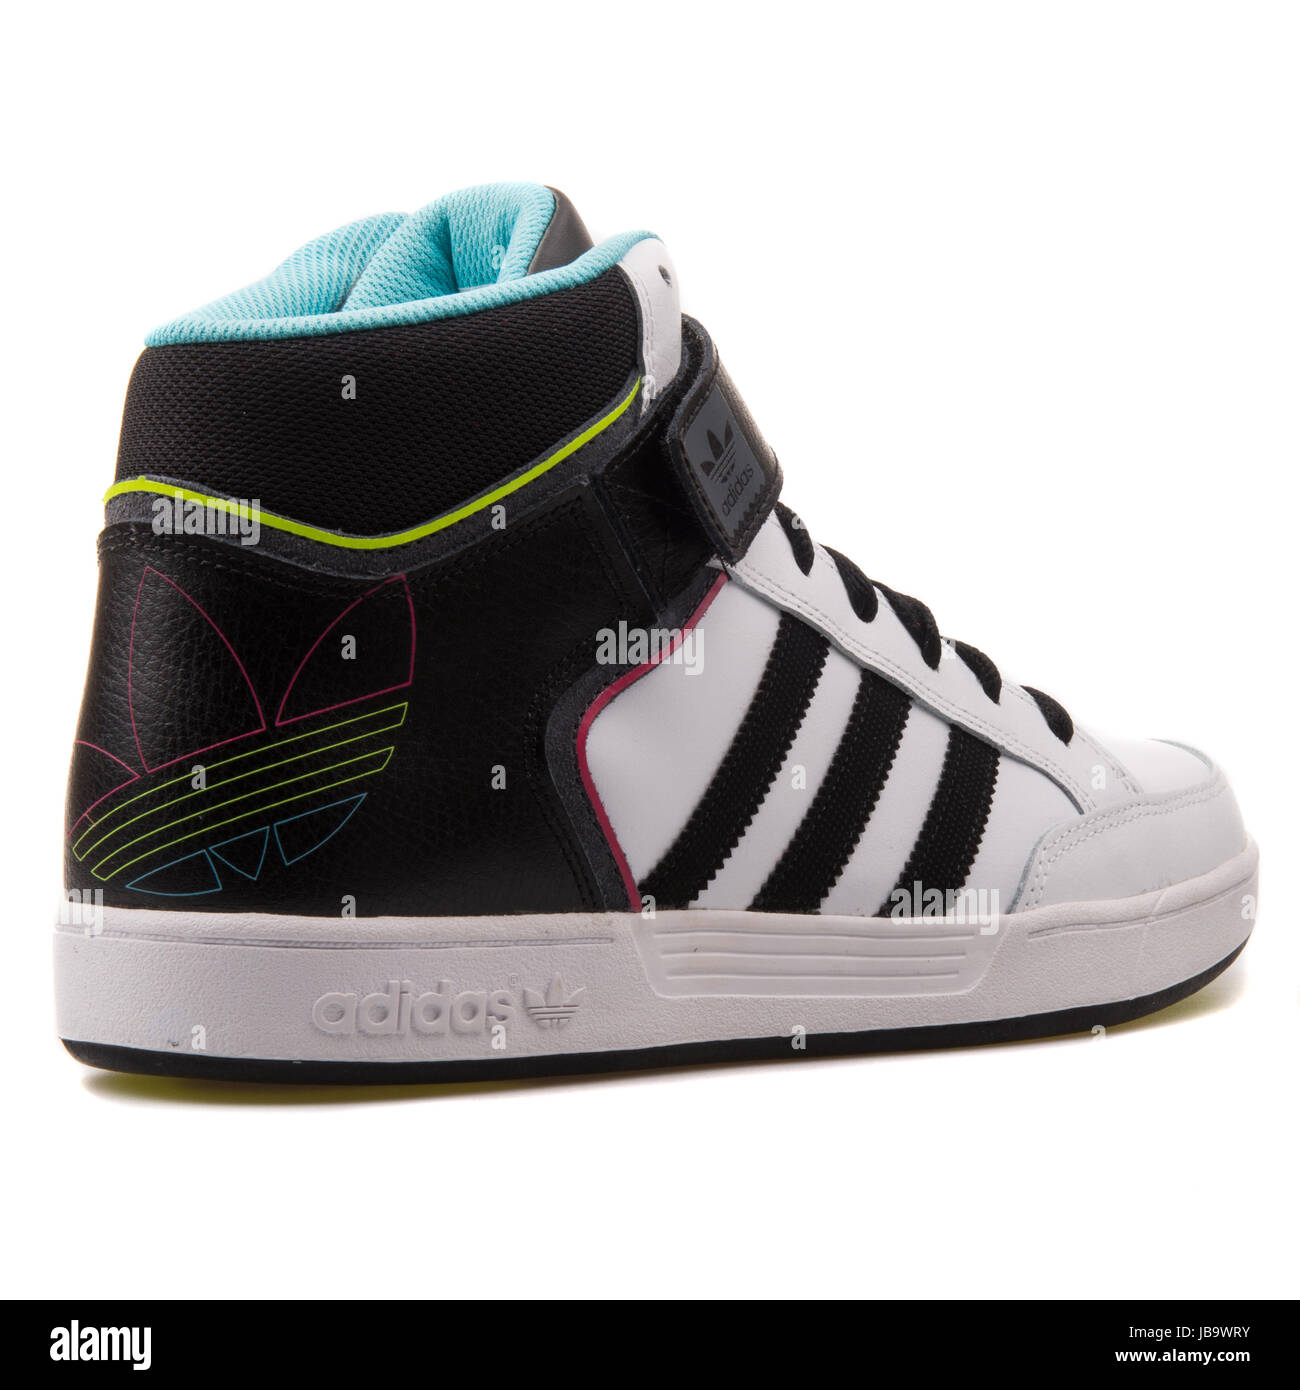 Adidas Varial mediados del hombre blanco y negro Skateboarding Shoes -  D68665 Fotografía de stock - Alamy